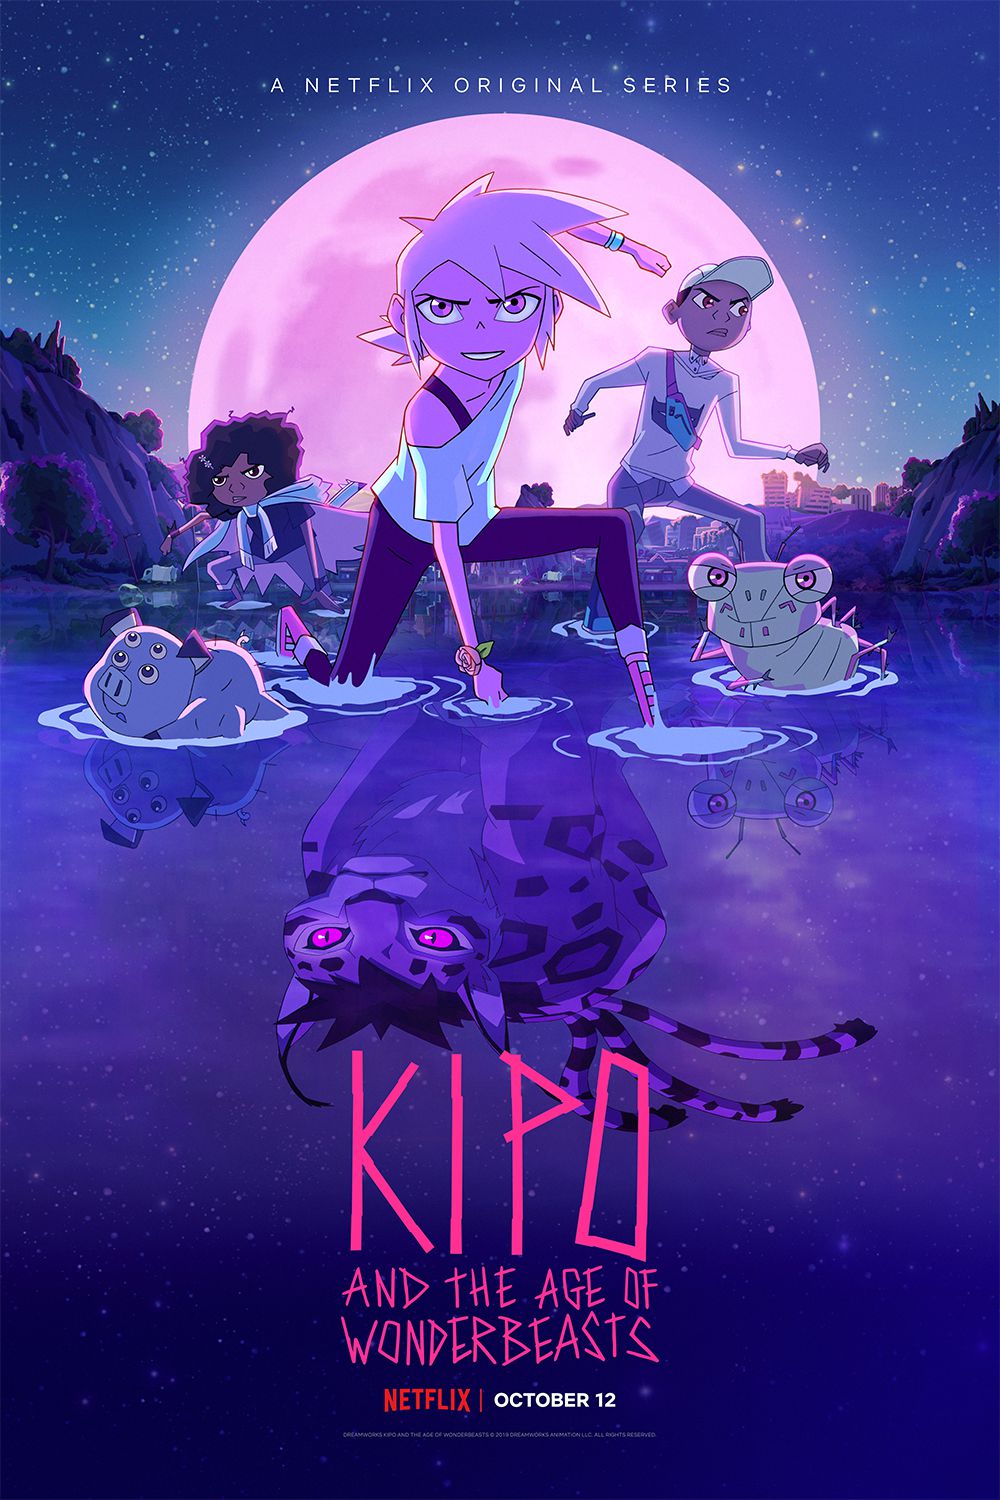 säsong 3 affisch av Kipo och Wonderbeasts ålder, med kipo fram och mitt, en jaguar reflektion i vattnet